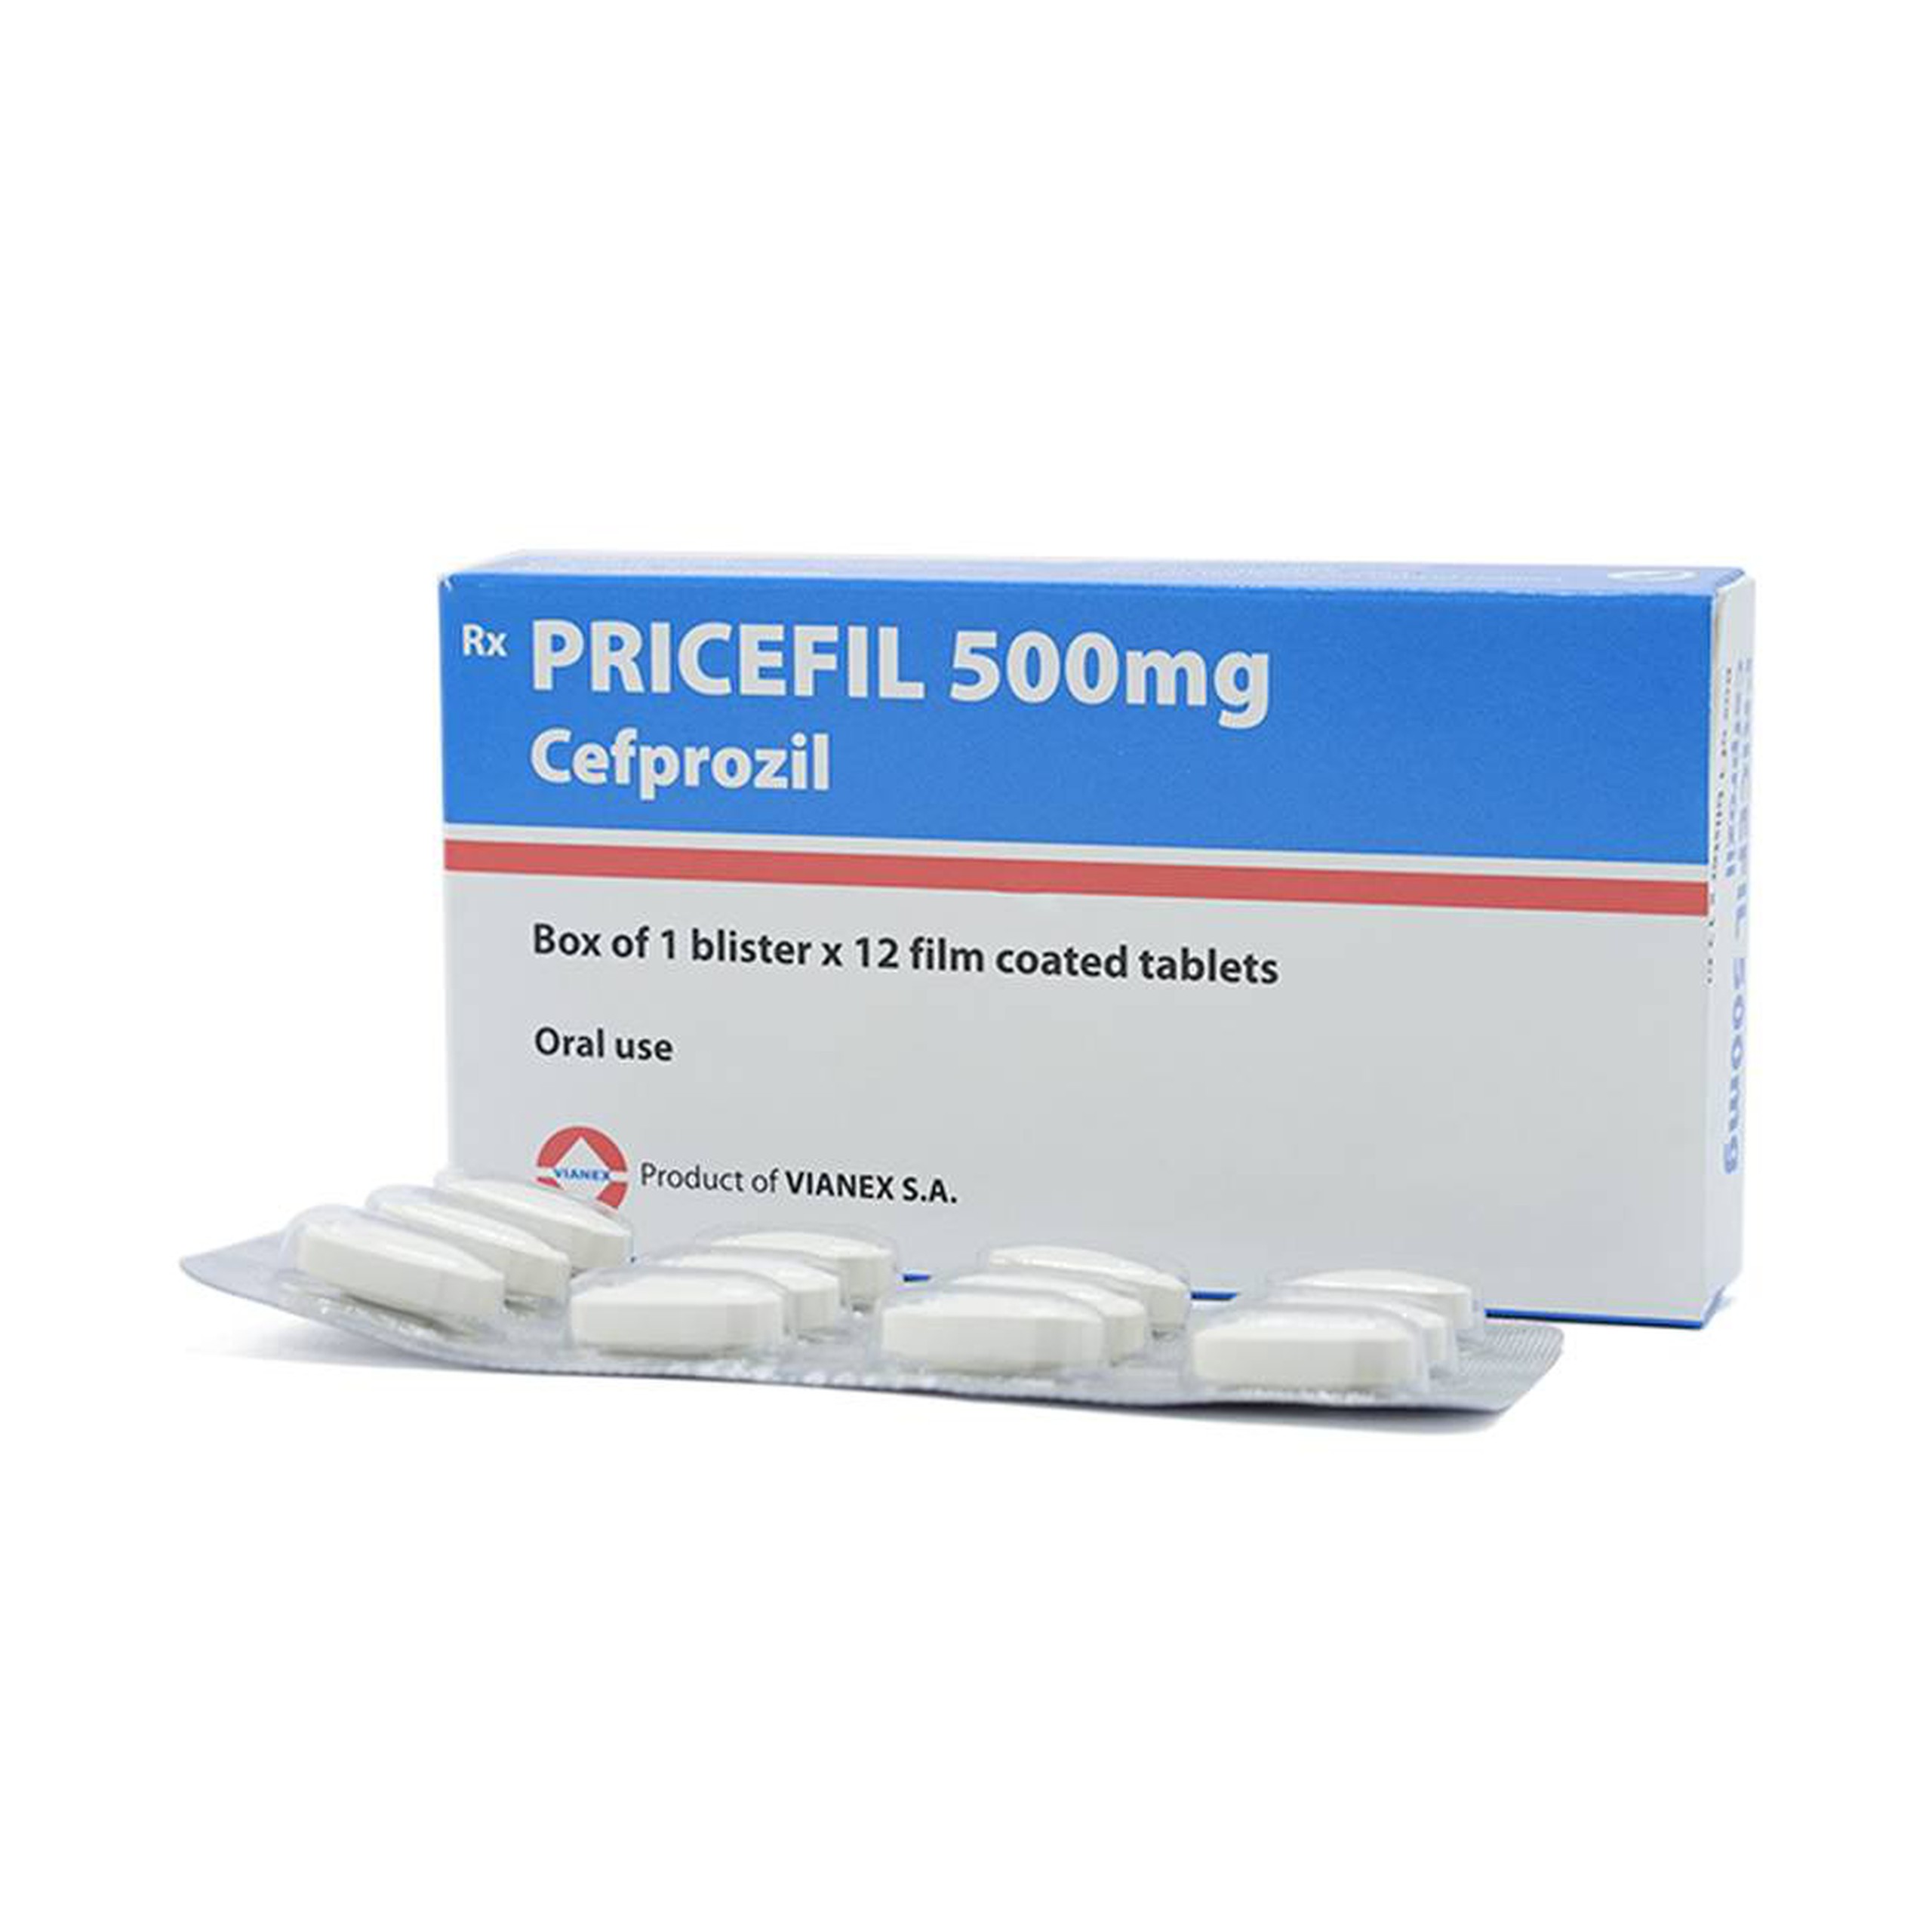 Thuốc Pricefil 500mg Vianex điều trị nhiễm khuẩn đường hô hấp (1 vỉ x 12 viên)